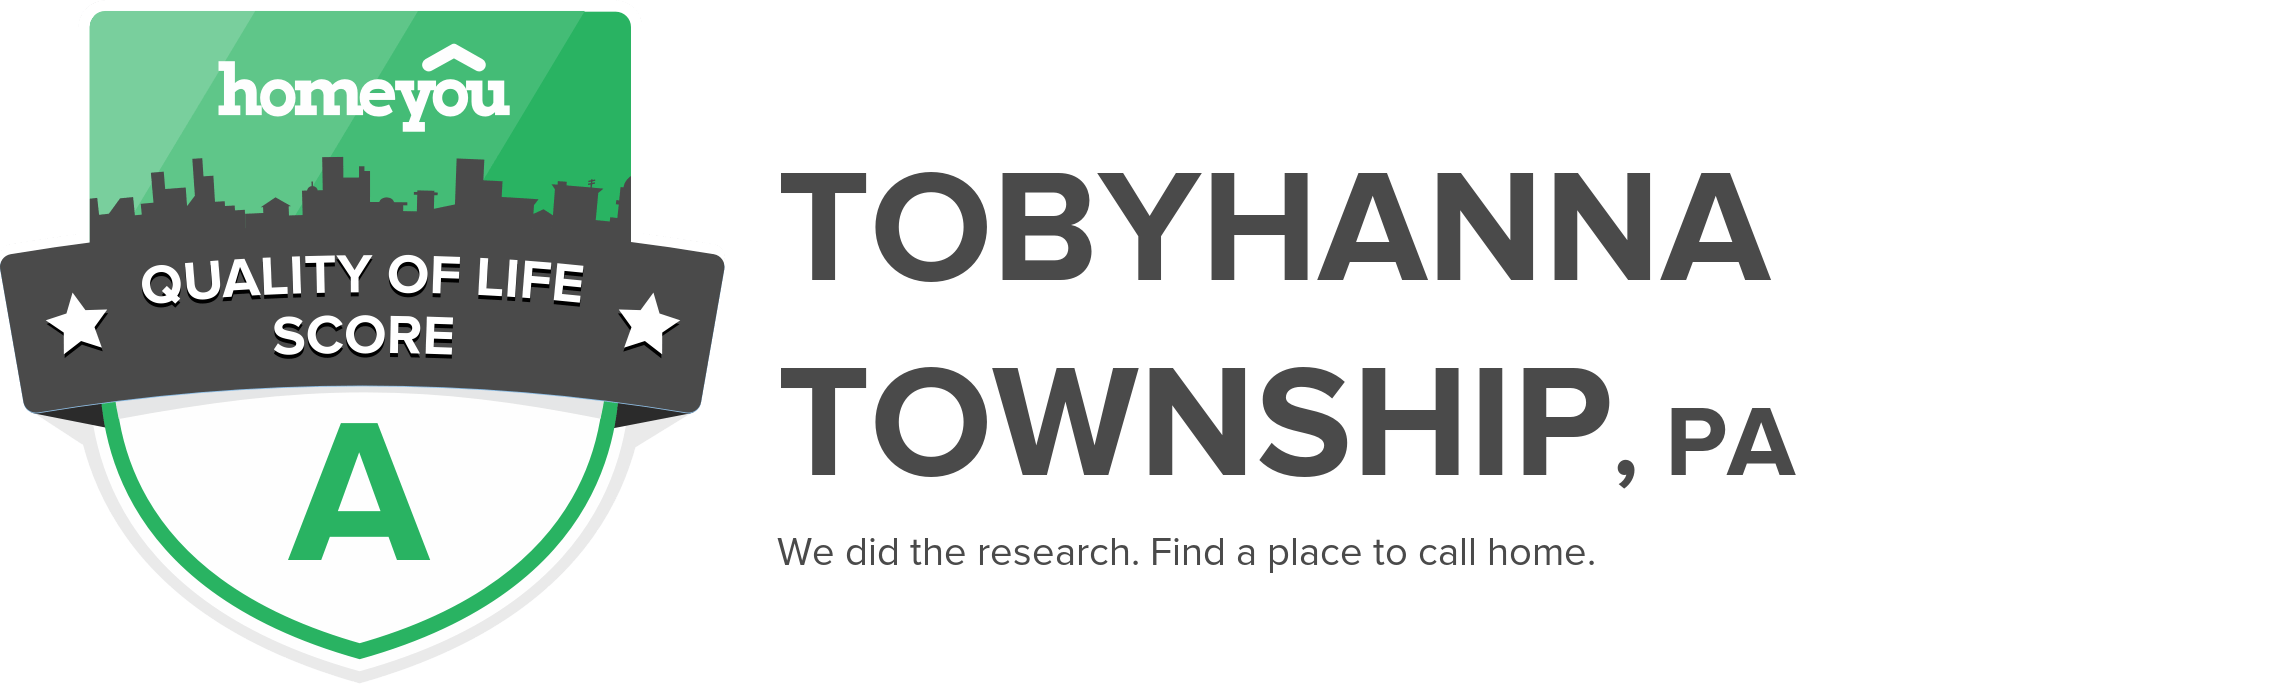 Tobyhanna township, PA